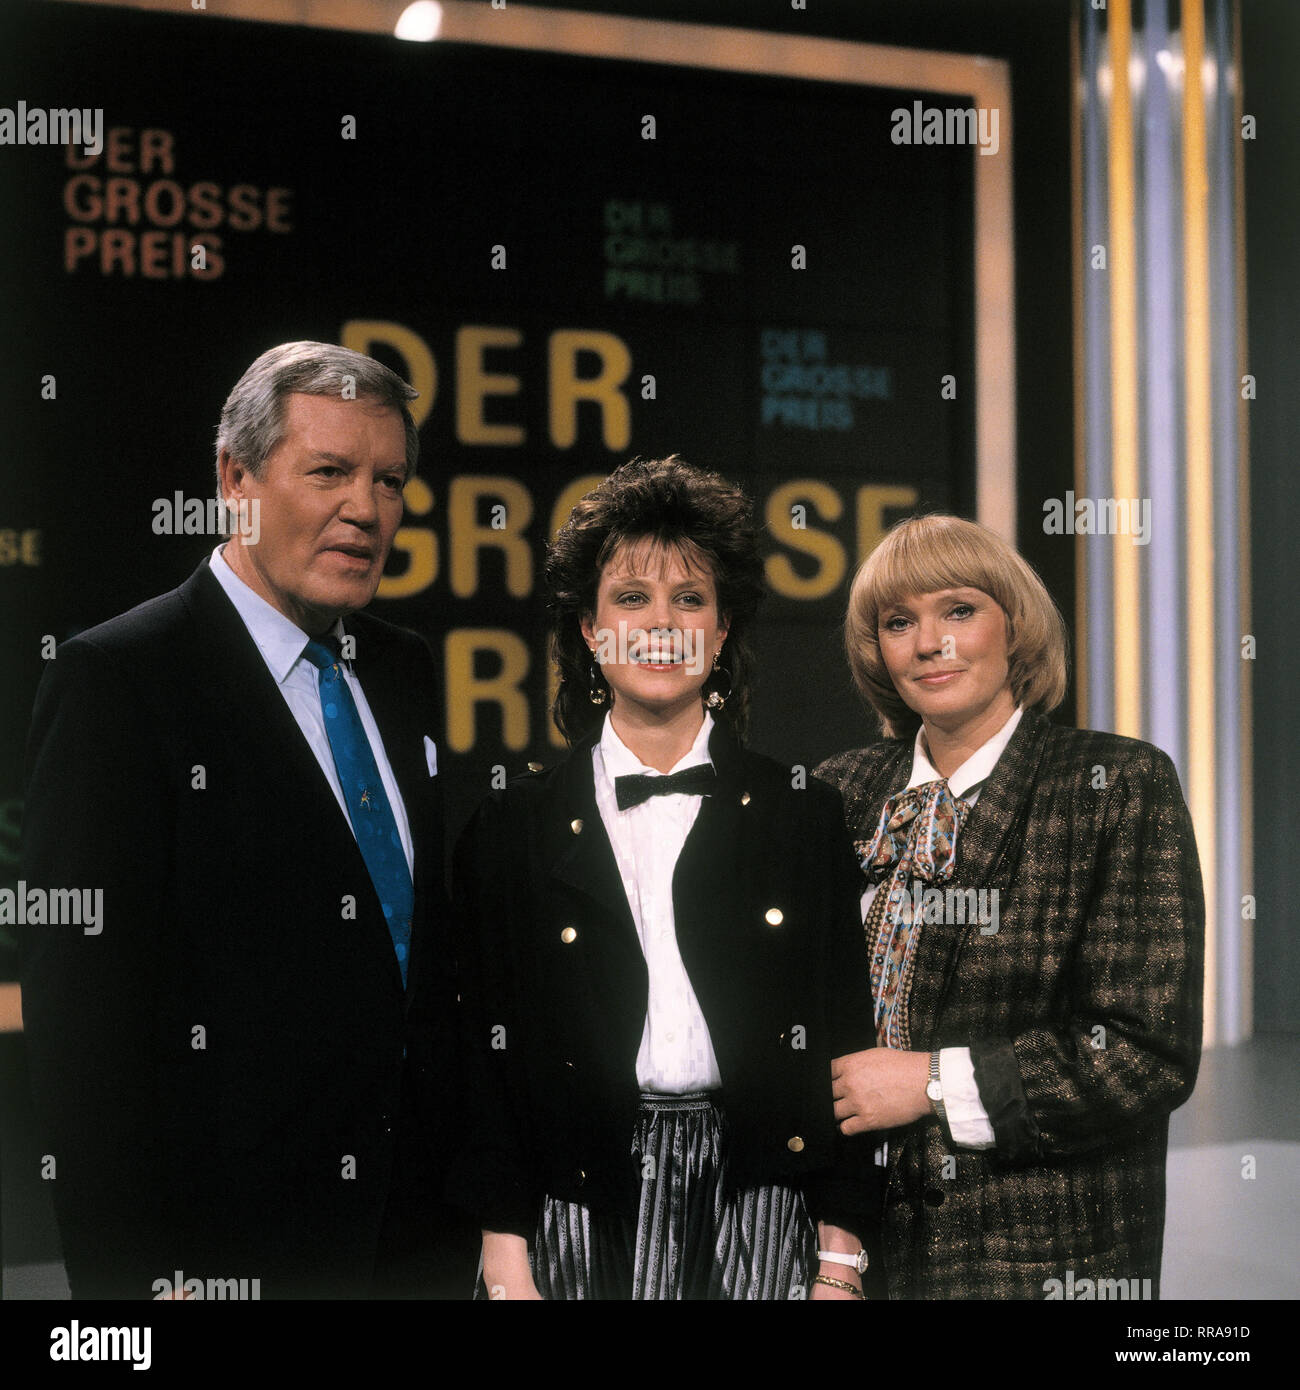 DER GROSSE PREIS / WIM THOELKE mit neuer Assistentin KAROLINE REINHARDT und BEATE HOPF, 1988 EM / Überschrift: DER GROSSE PREIS Stock Photo